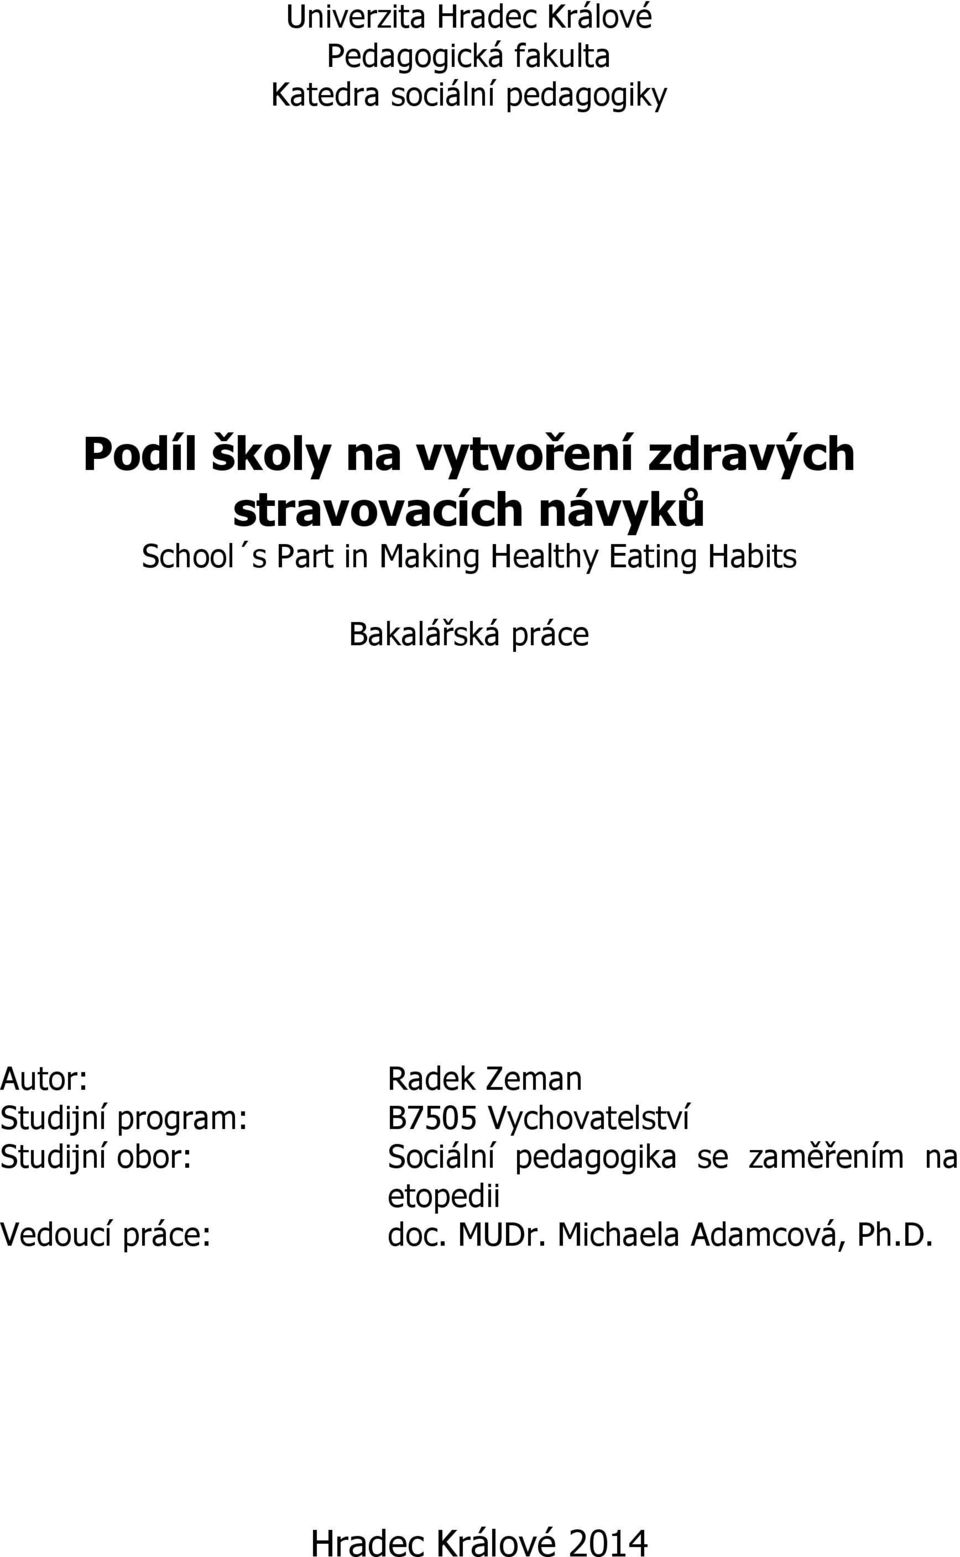 Bakalářská práce Autor: Studijní program: Studijní obor: Vedoucí práce: Radek Zeman B7505